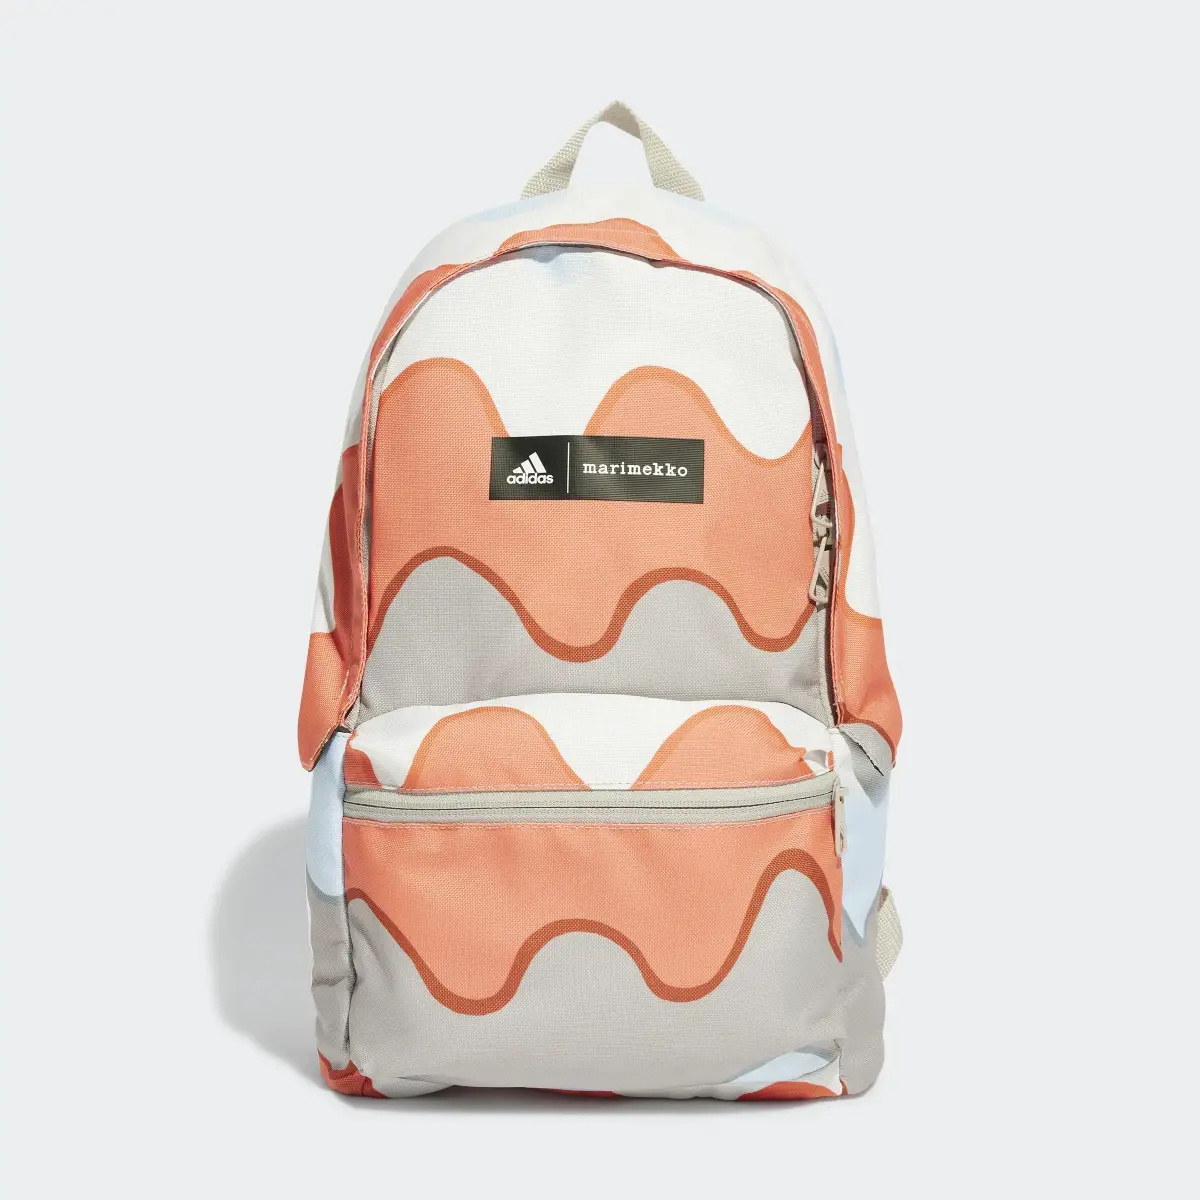 Adidas x Marimekko Backpack. 2